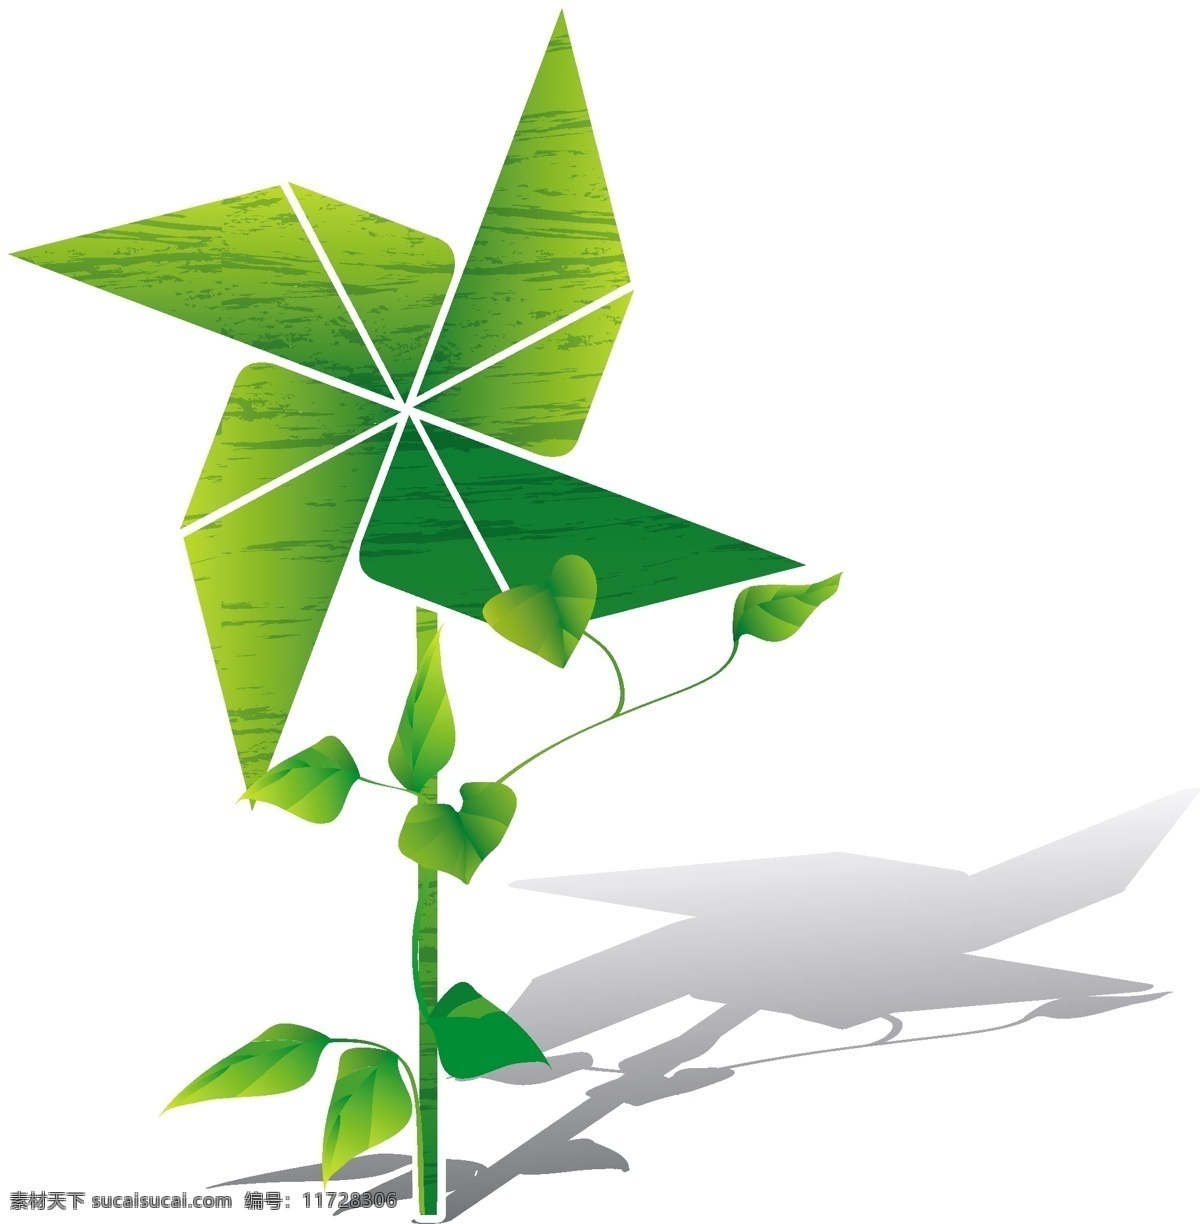 风车 绿色风车 卡通风车 纸风车 绿化概念 绿叶 绿化环境 种植树木 能源环保 矢量素材 其他矢量 矢量